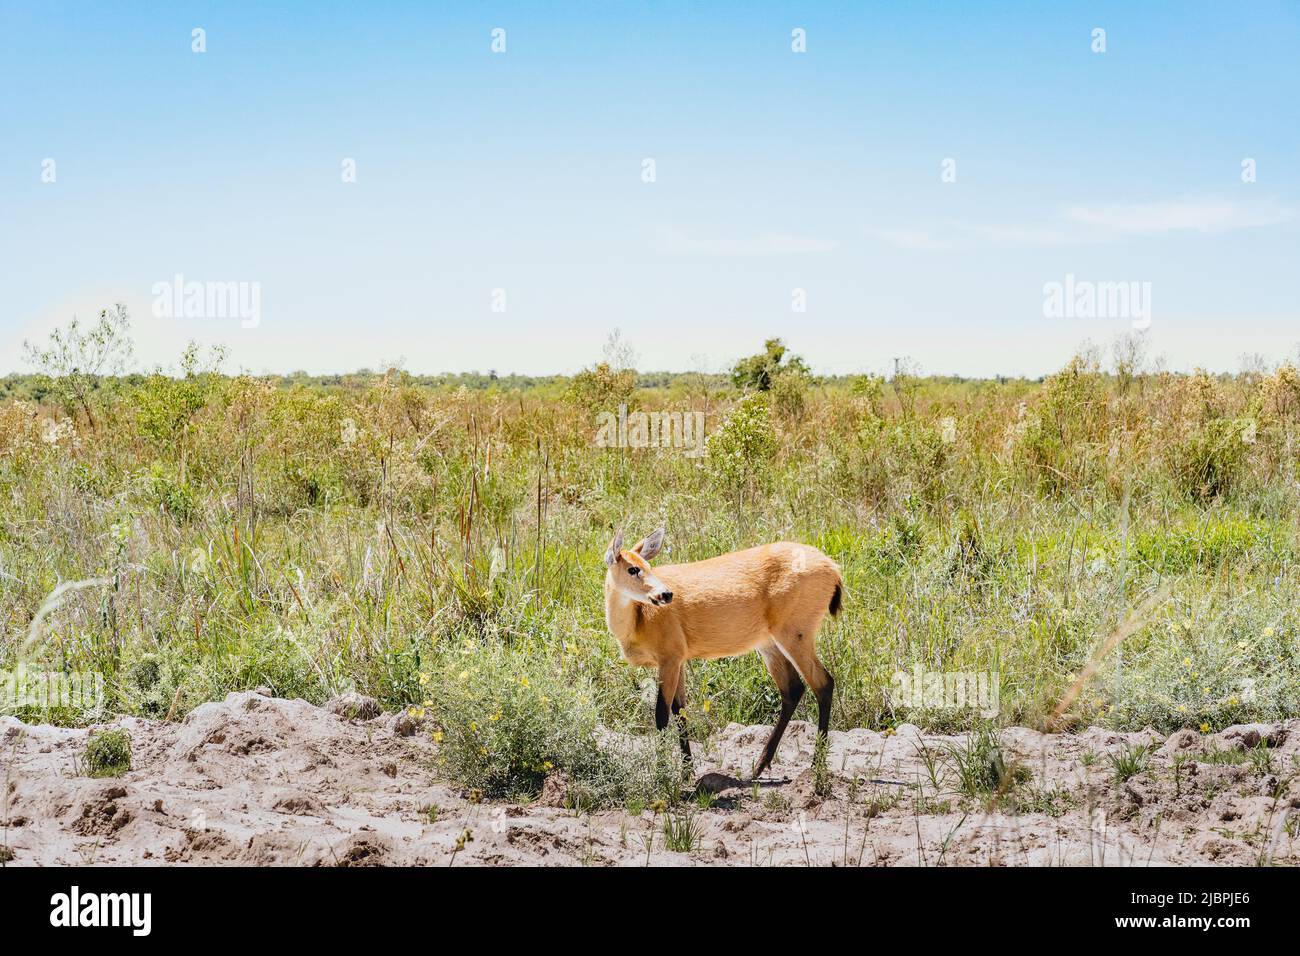 Ciervo pampa hembra (Ozotoceros bezoarticus) mira al lado de los pastizales de Ibera, Argentina. Los ciervos de pampas fueron reintroducidos a Iberá después Foto de stock